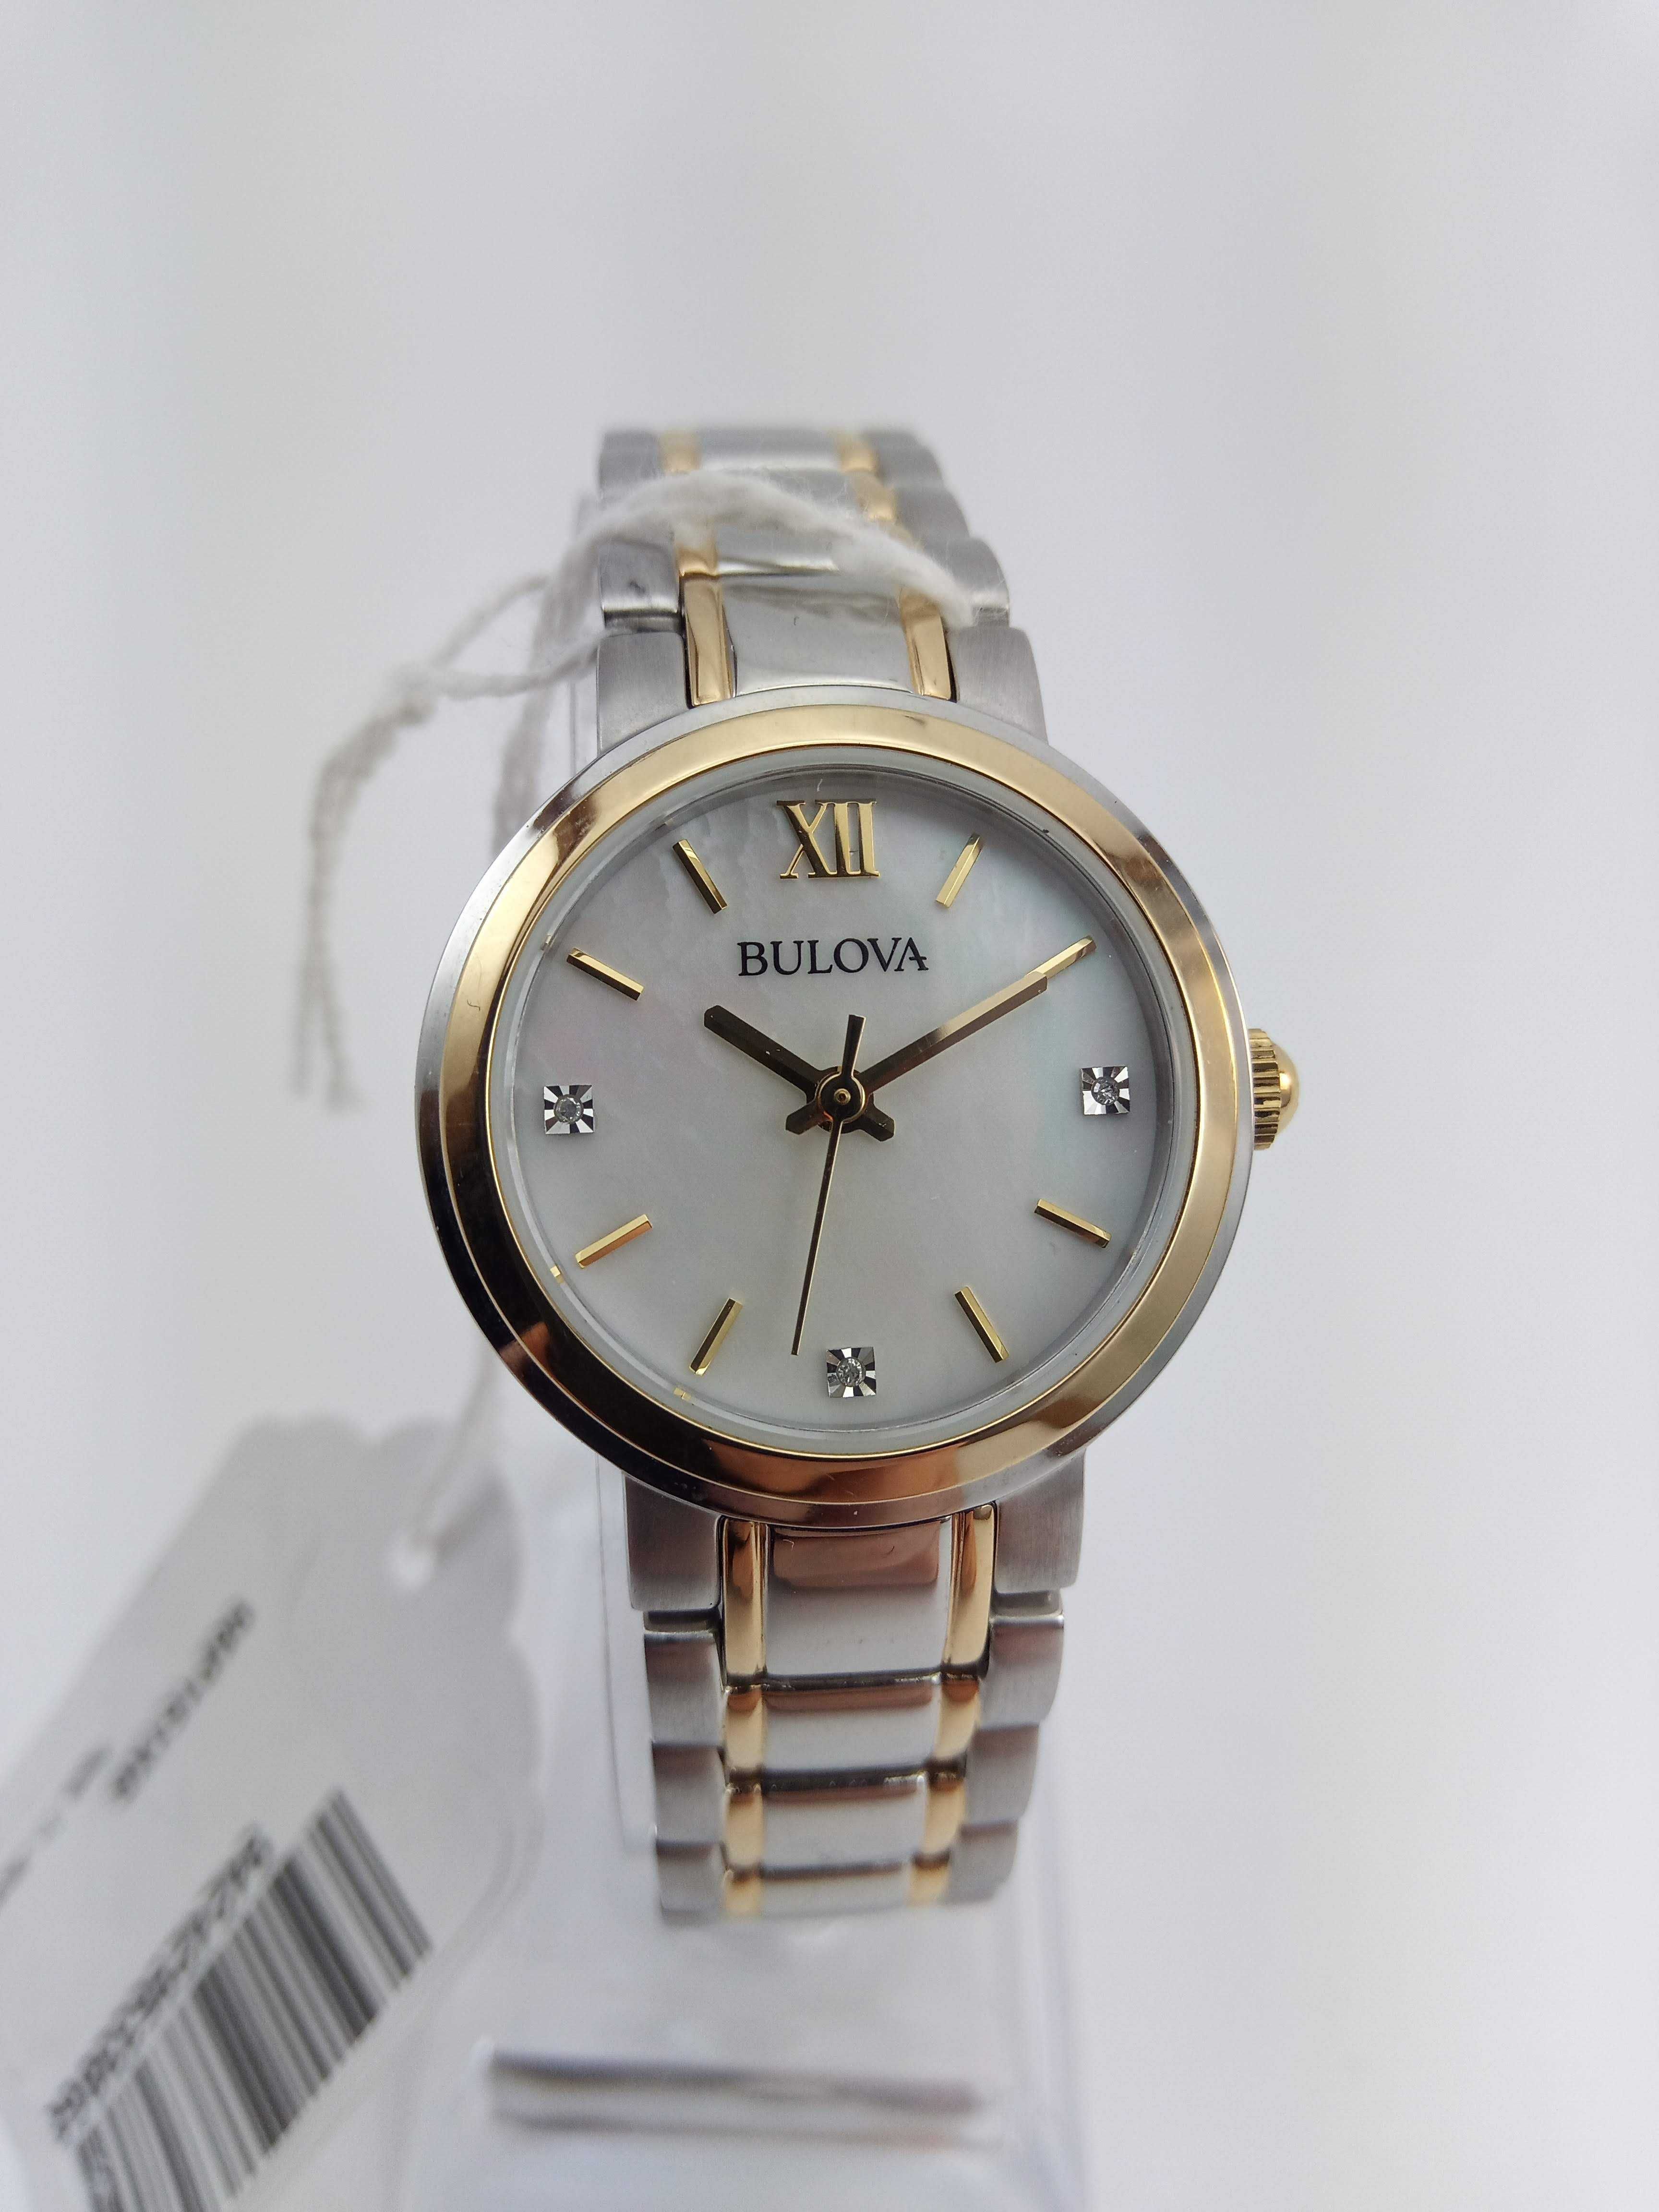 Шикарные женские часы с бриллиантами Bulova 98P151. Подарок девушке